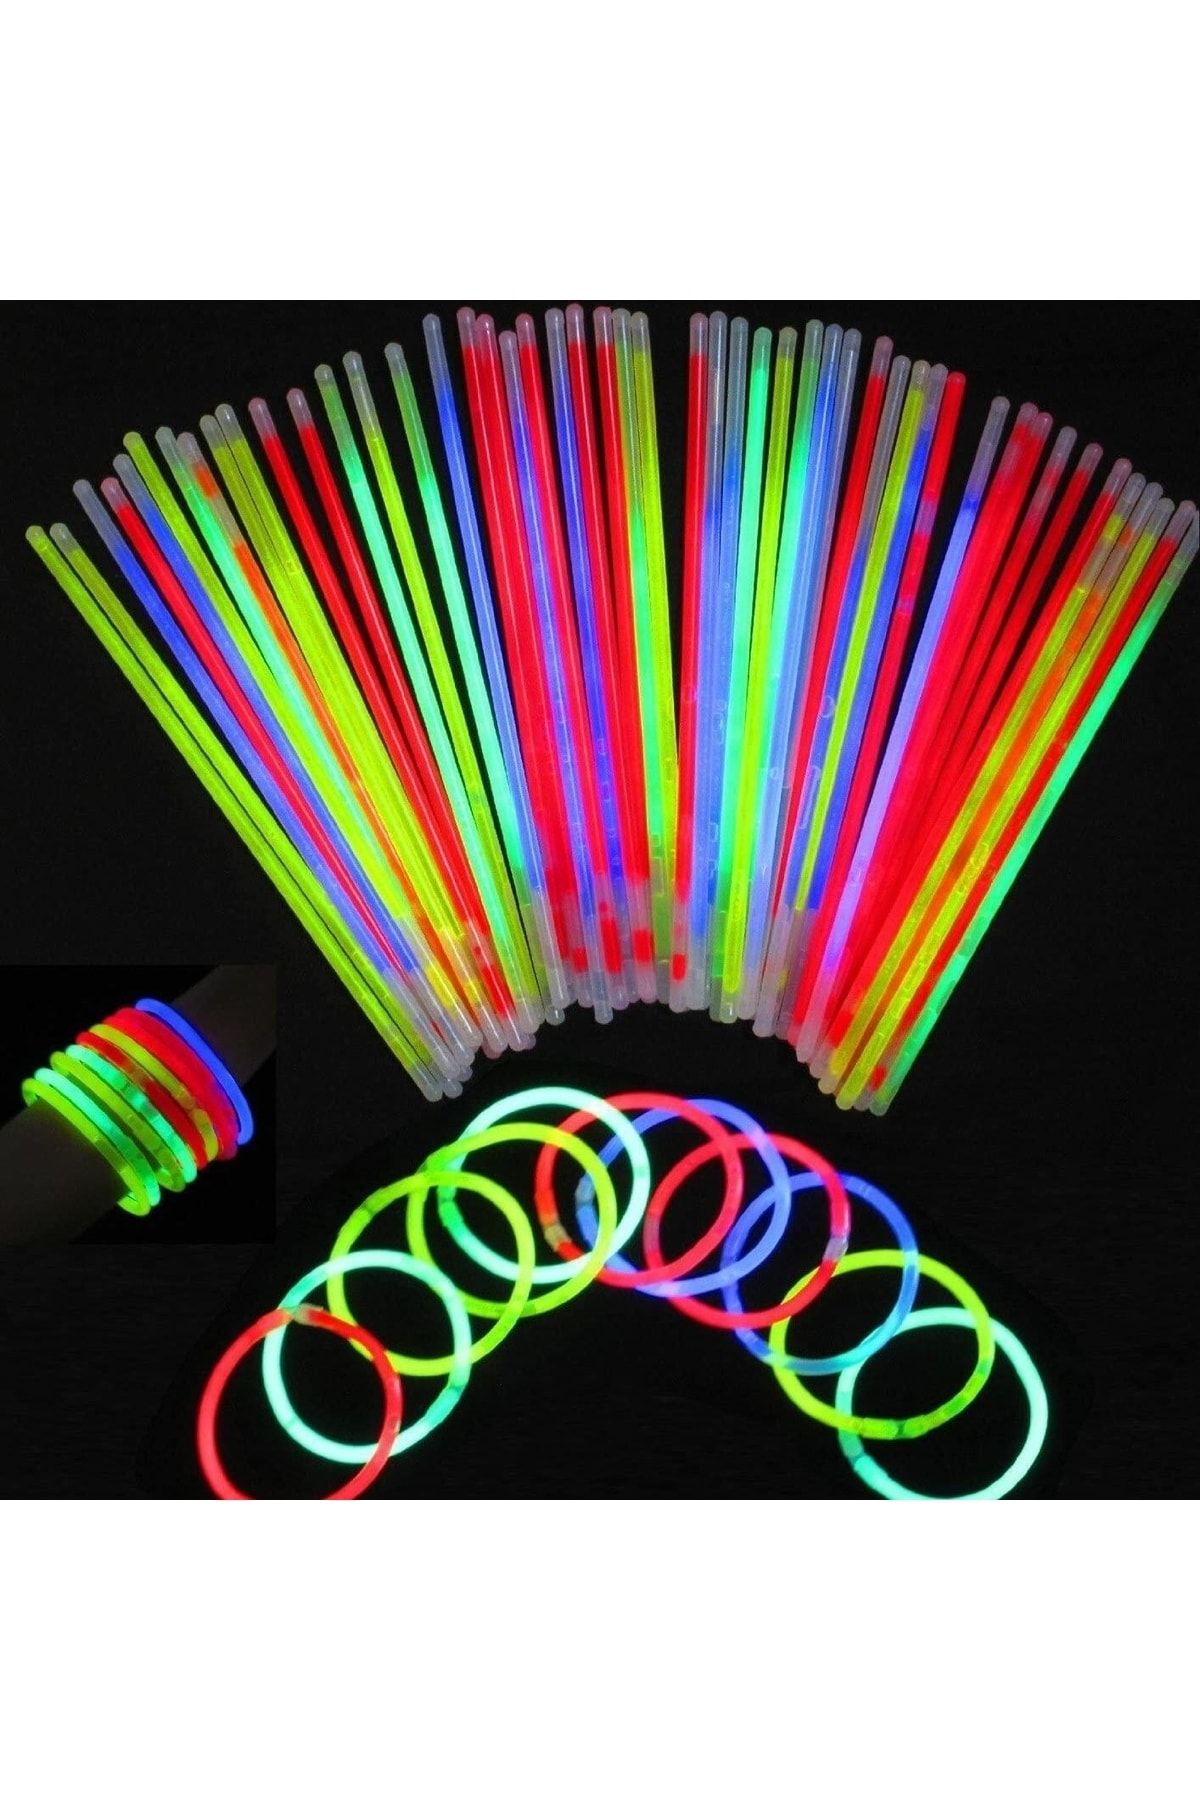 pazariz Glow Stick Fosforlu Neon Çubuk Bileklik Parti Konser Bilekliği 100 Adet